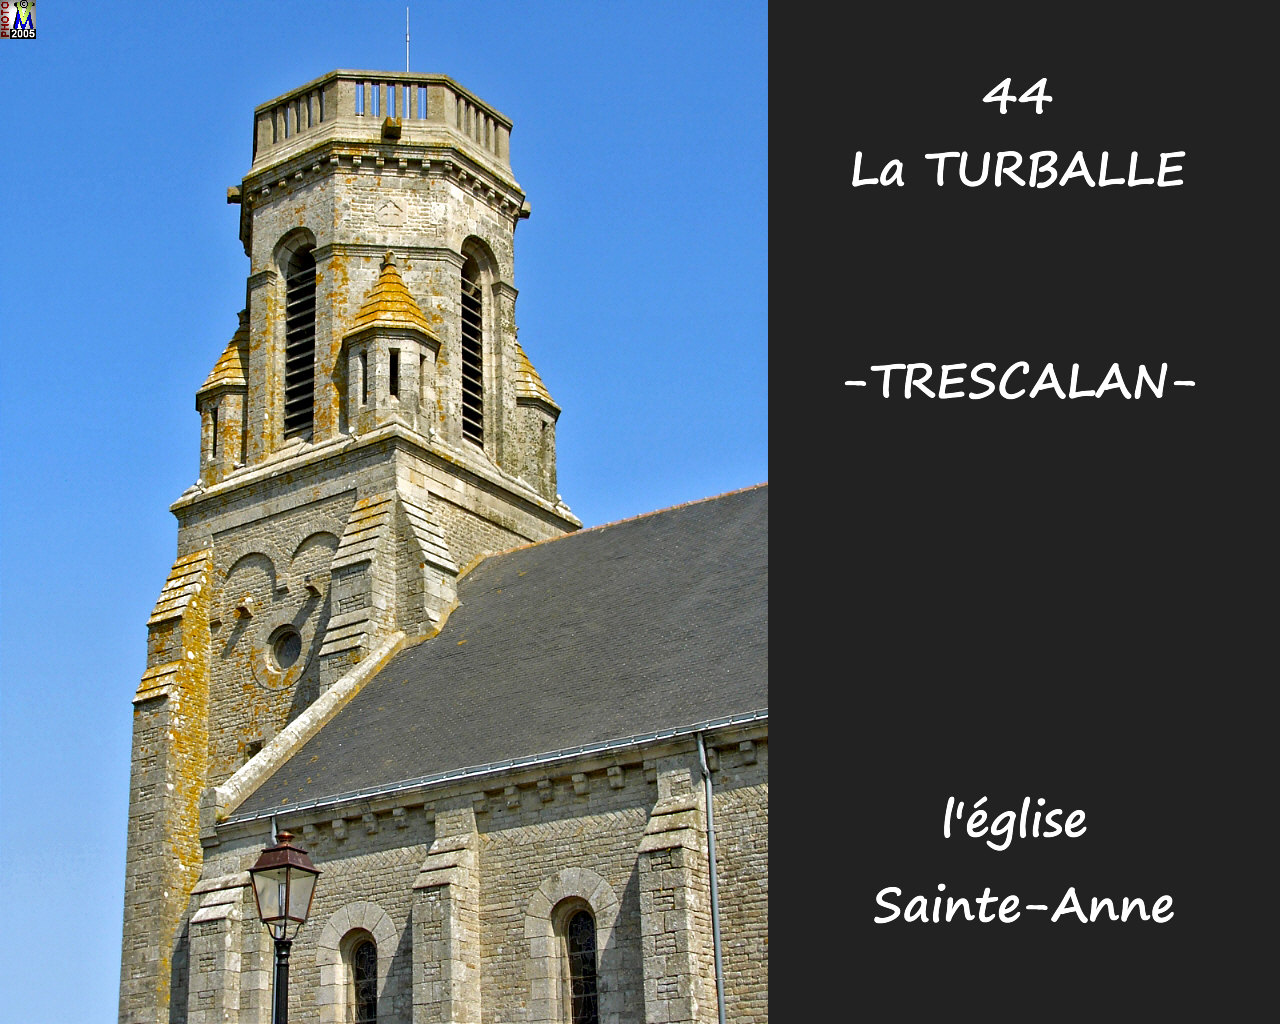 44TURBALLE-TRESCALAN_eglise_104.jpg